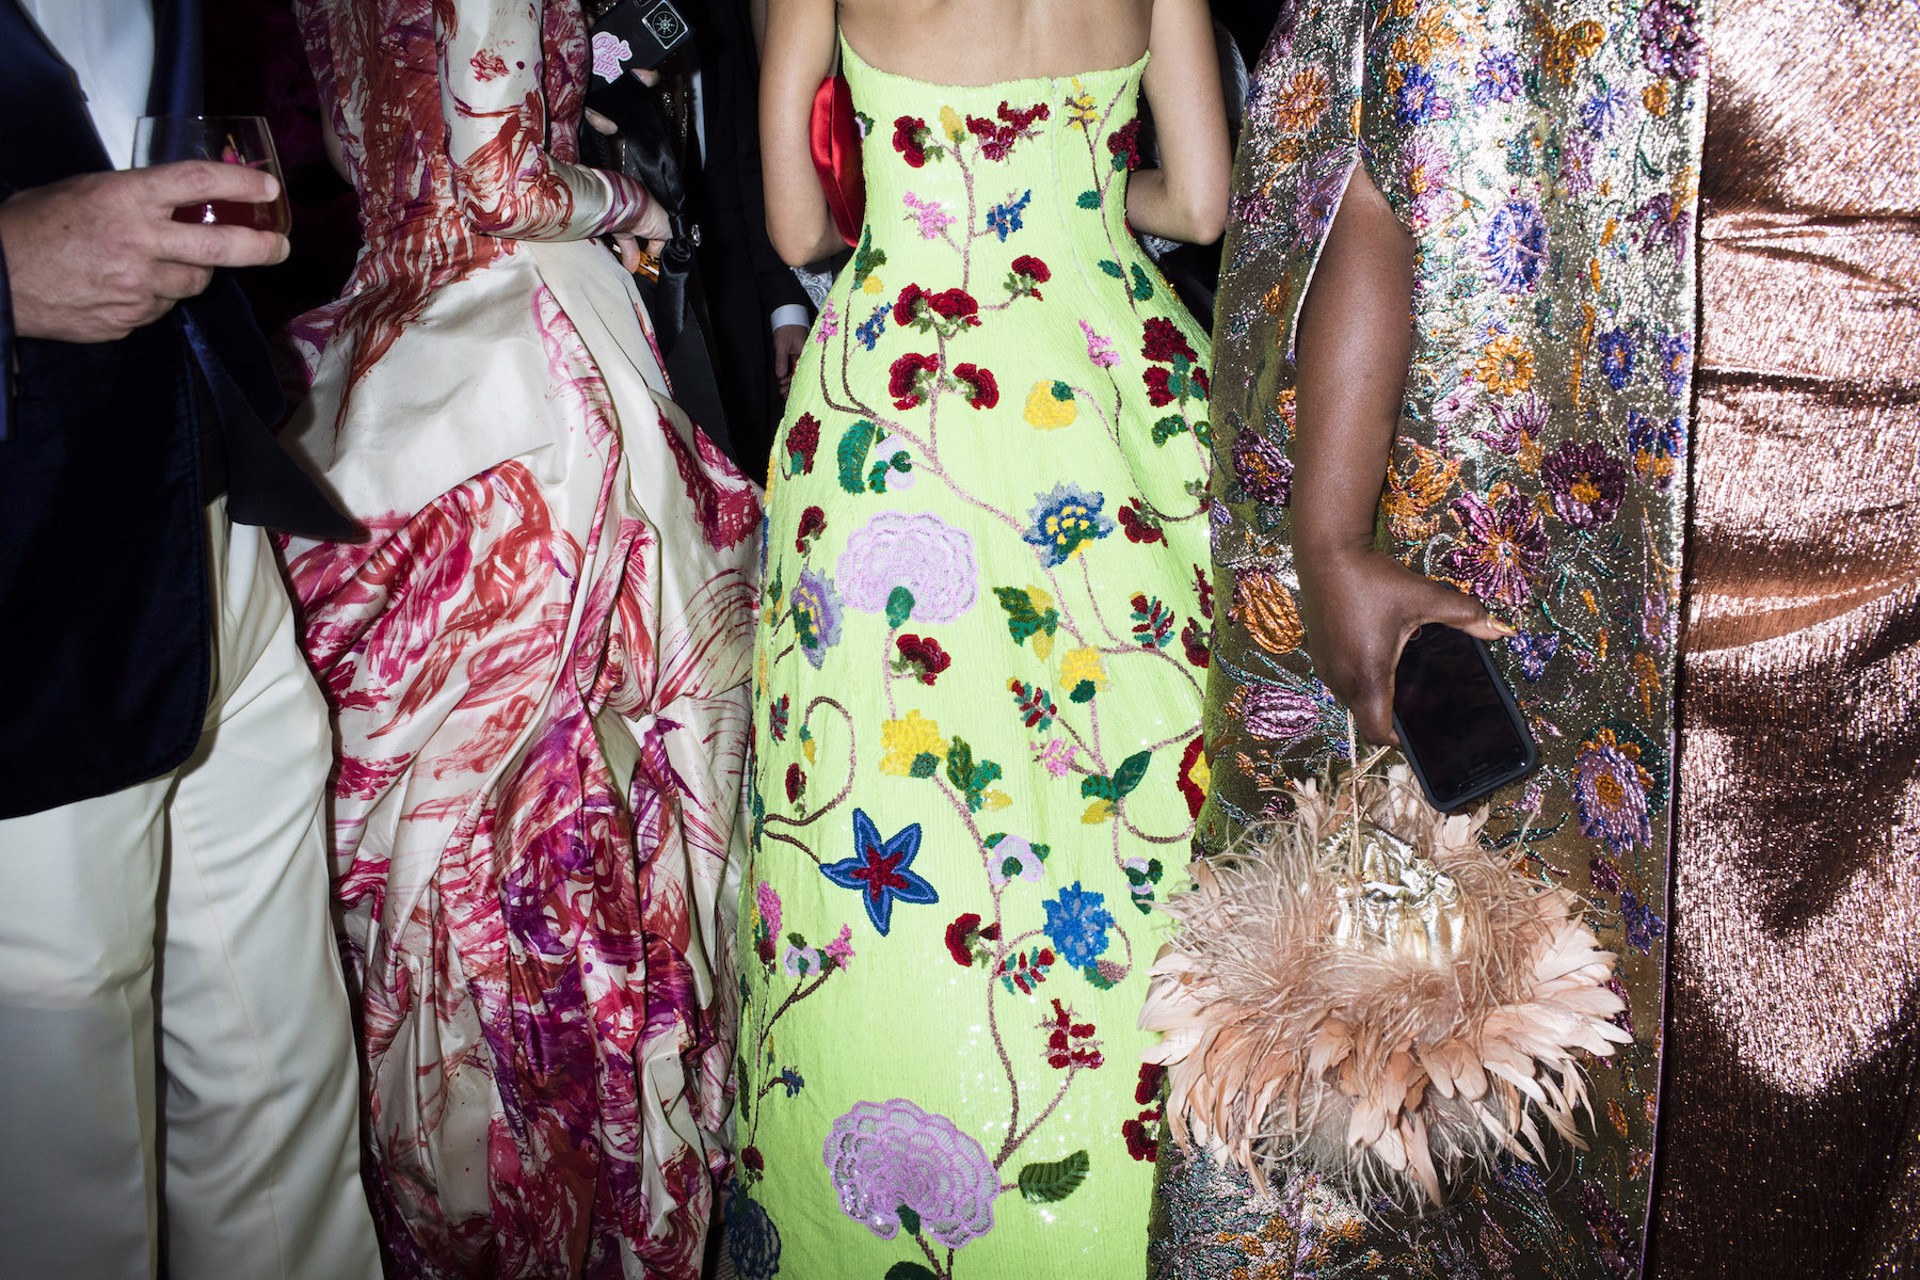 Dresses with Flowers, Met Gala series, NYC by Landon Nordeman